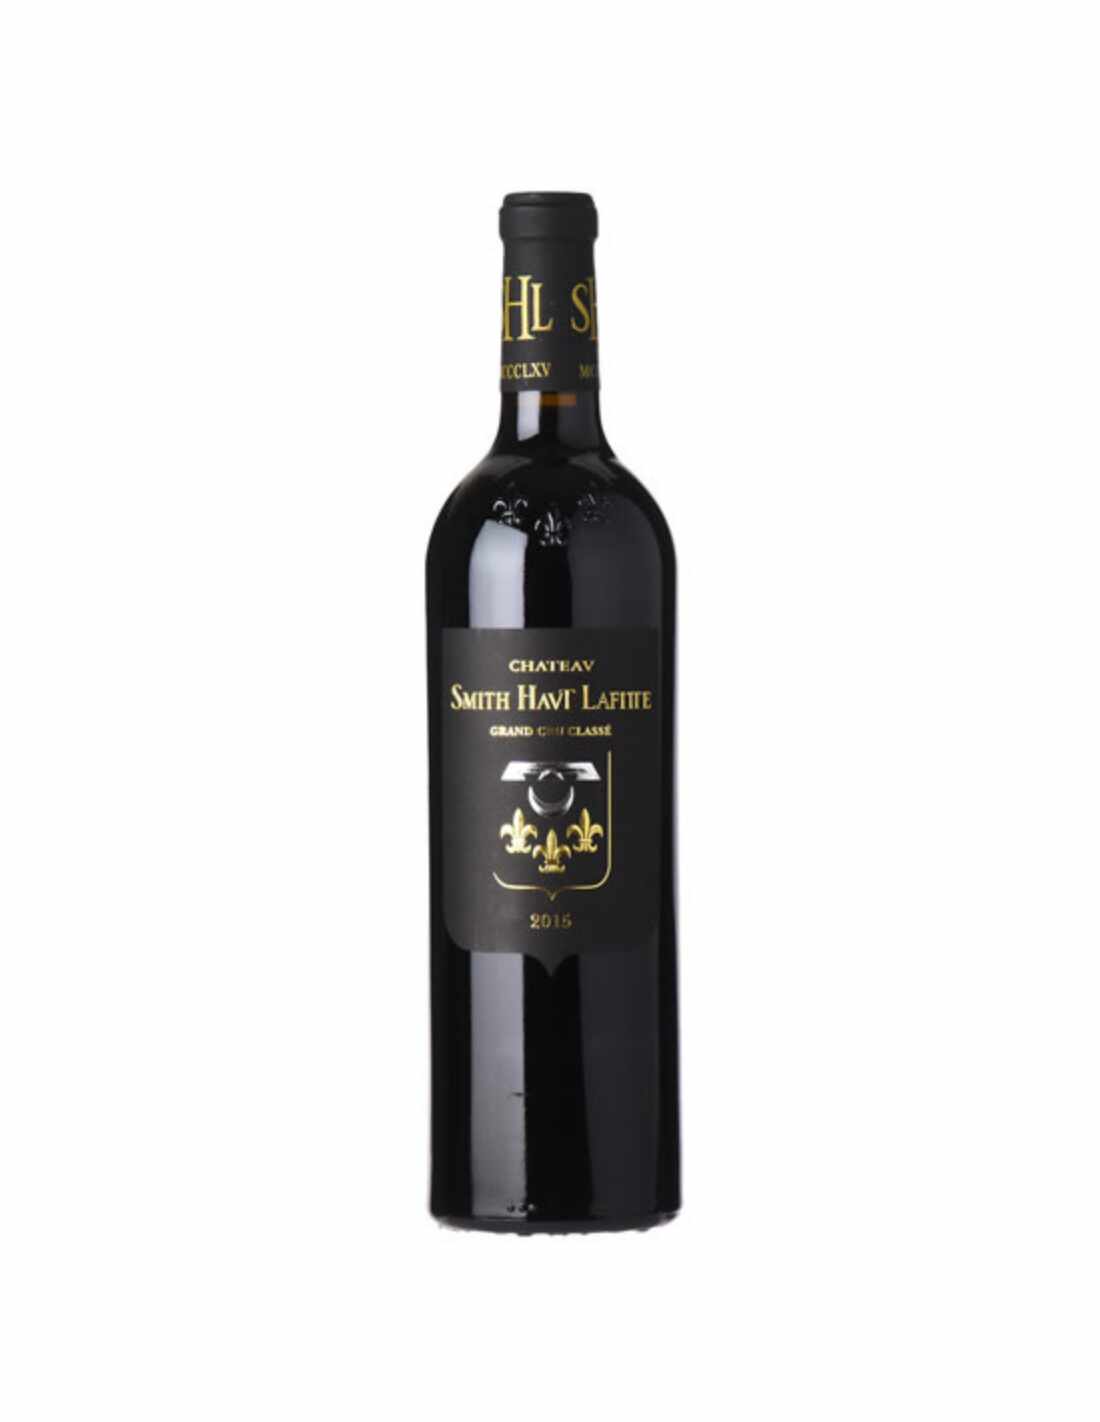 Vin rosu Ch芒teau Smith Haut-Lafitte Pessac-L茅ognan, 0.75L, 13% alc., Franta